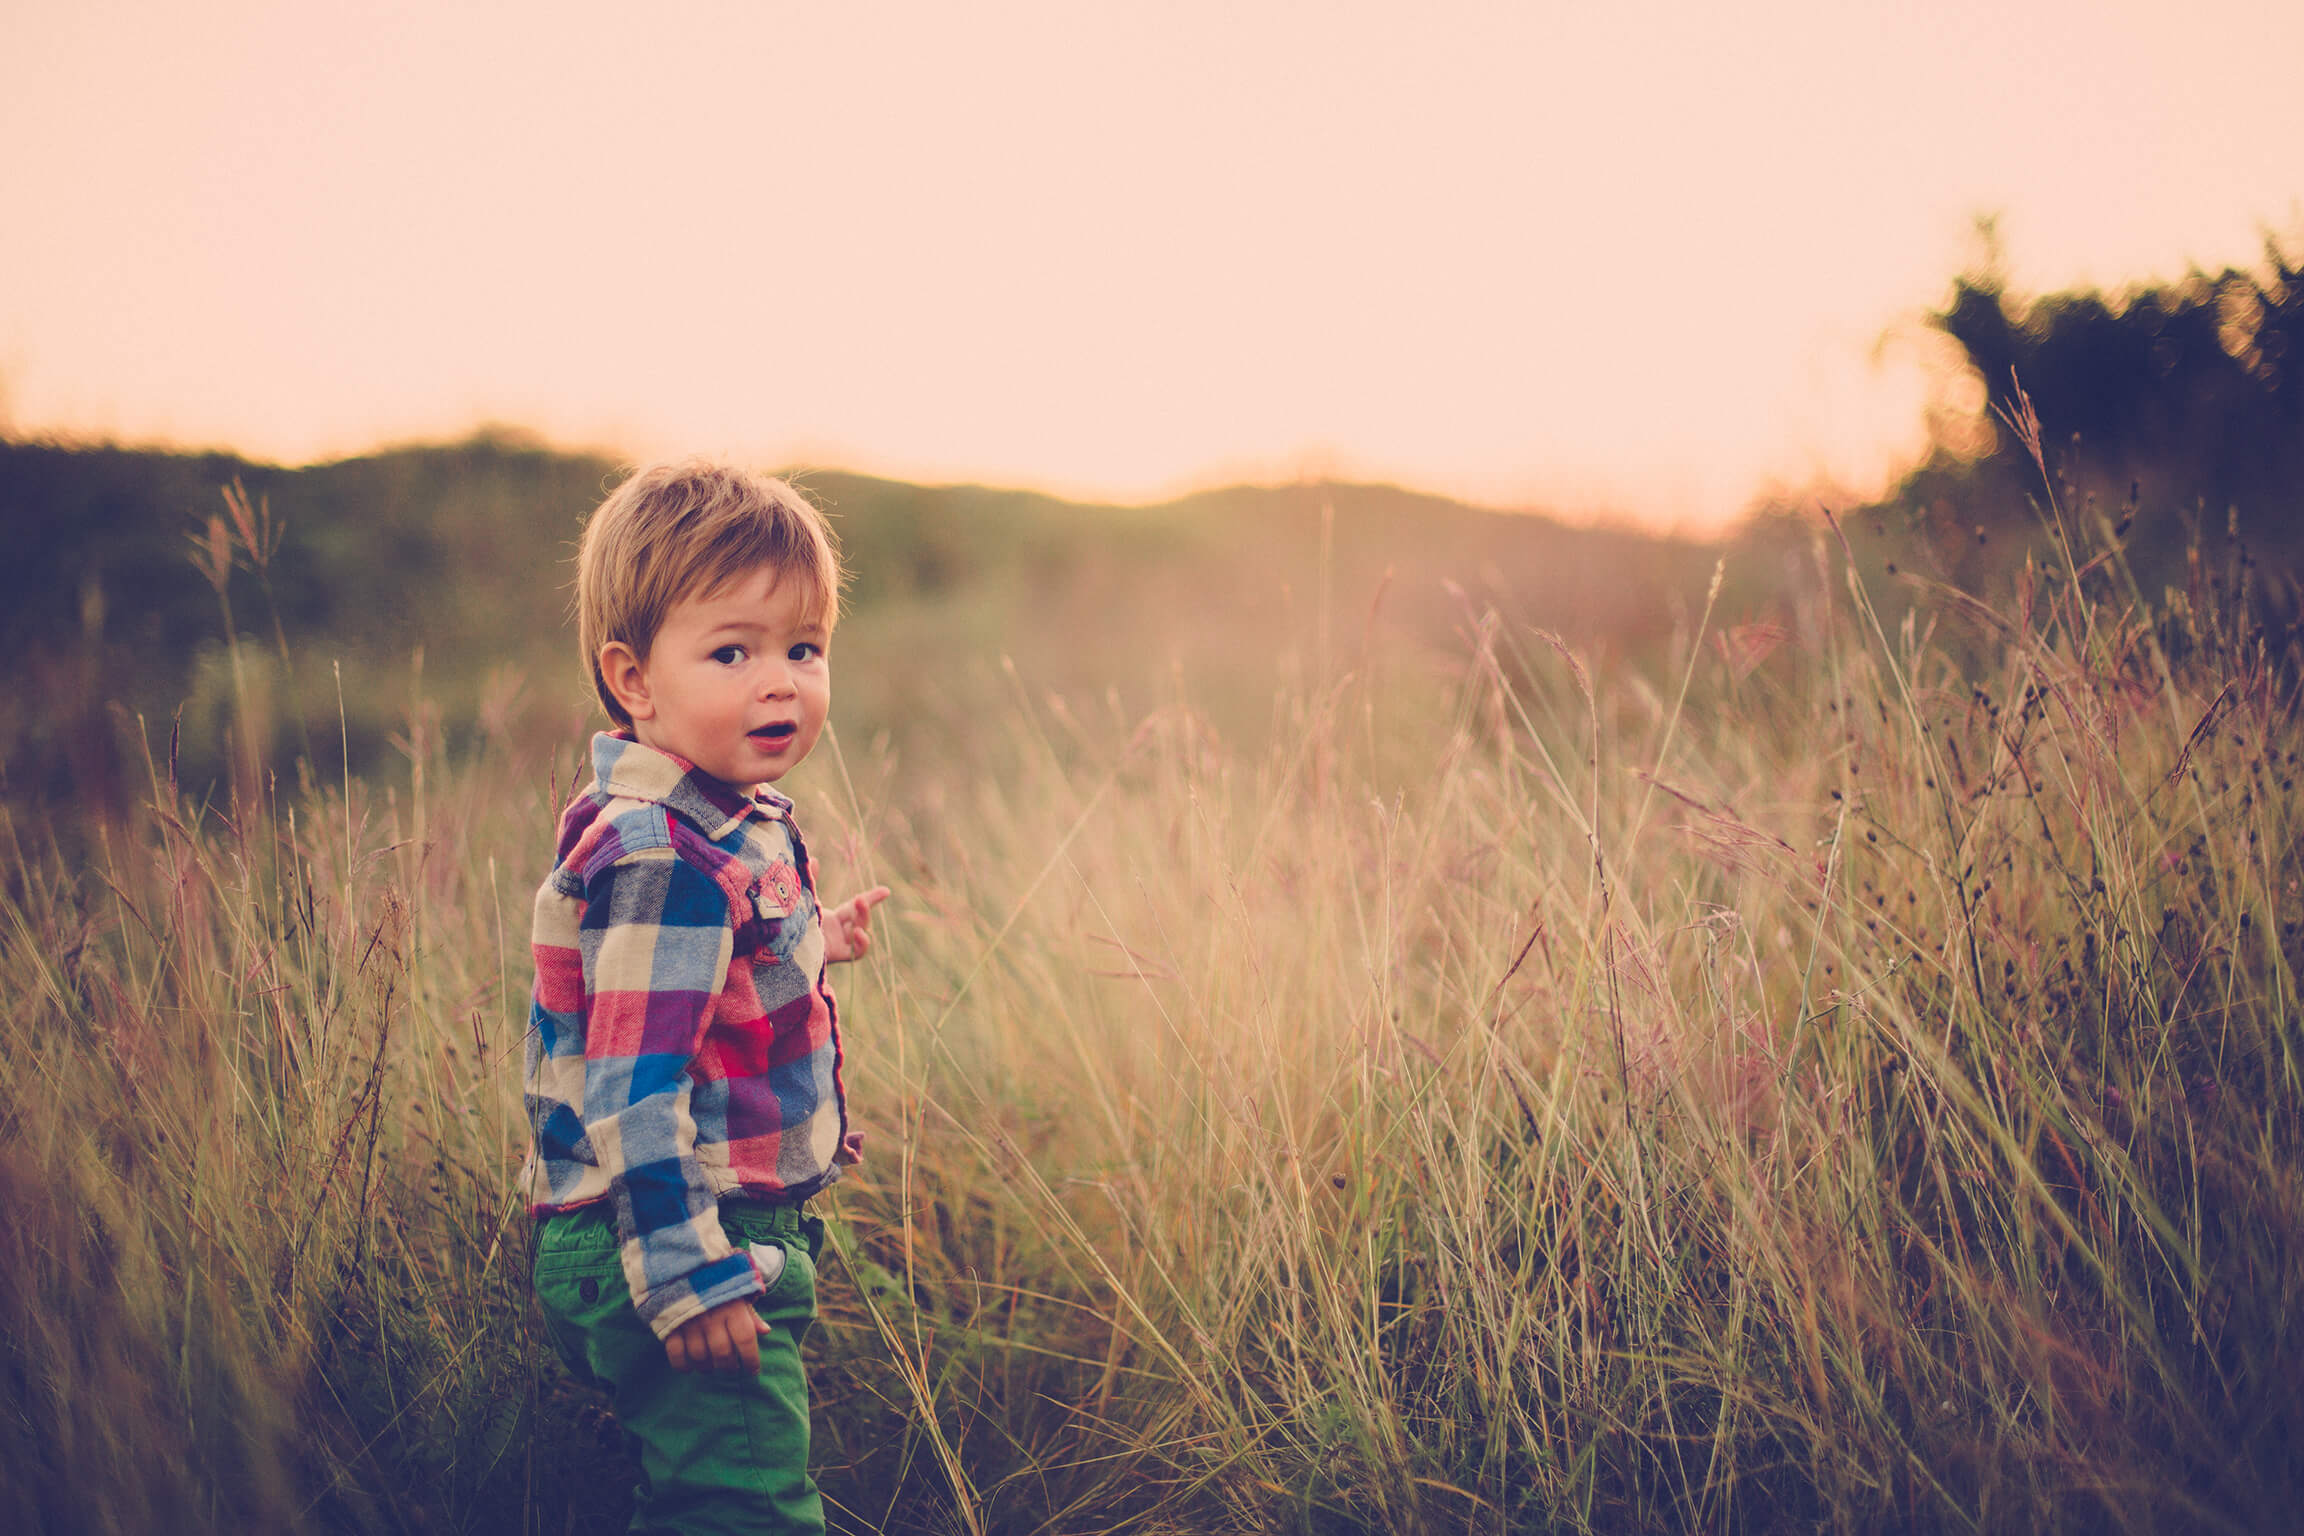 Baby boy exploring outdoors